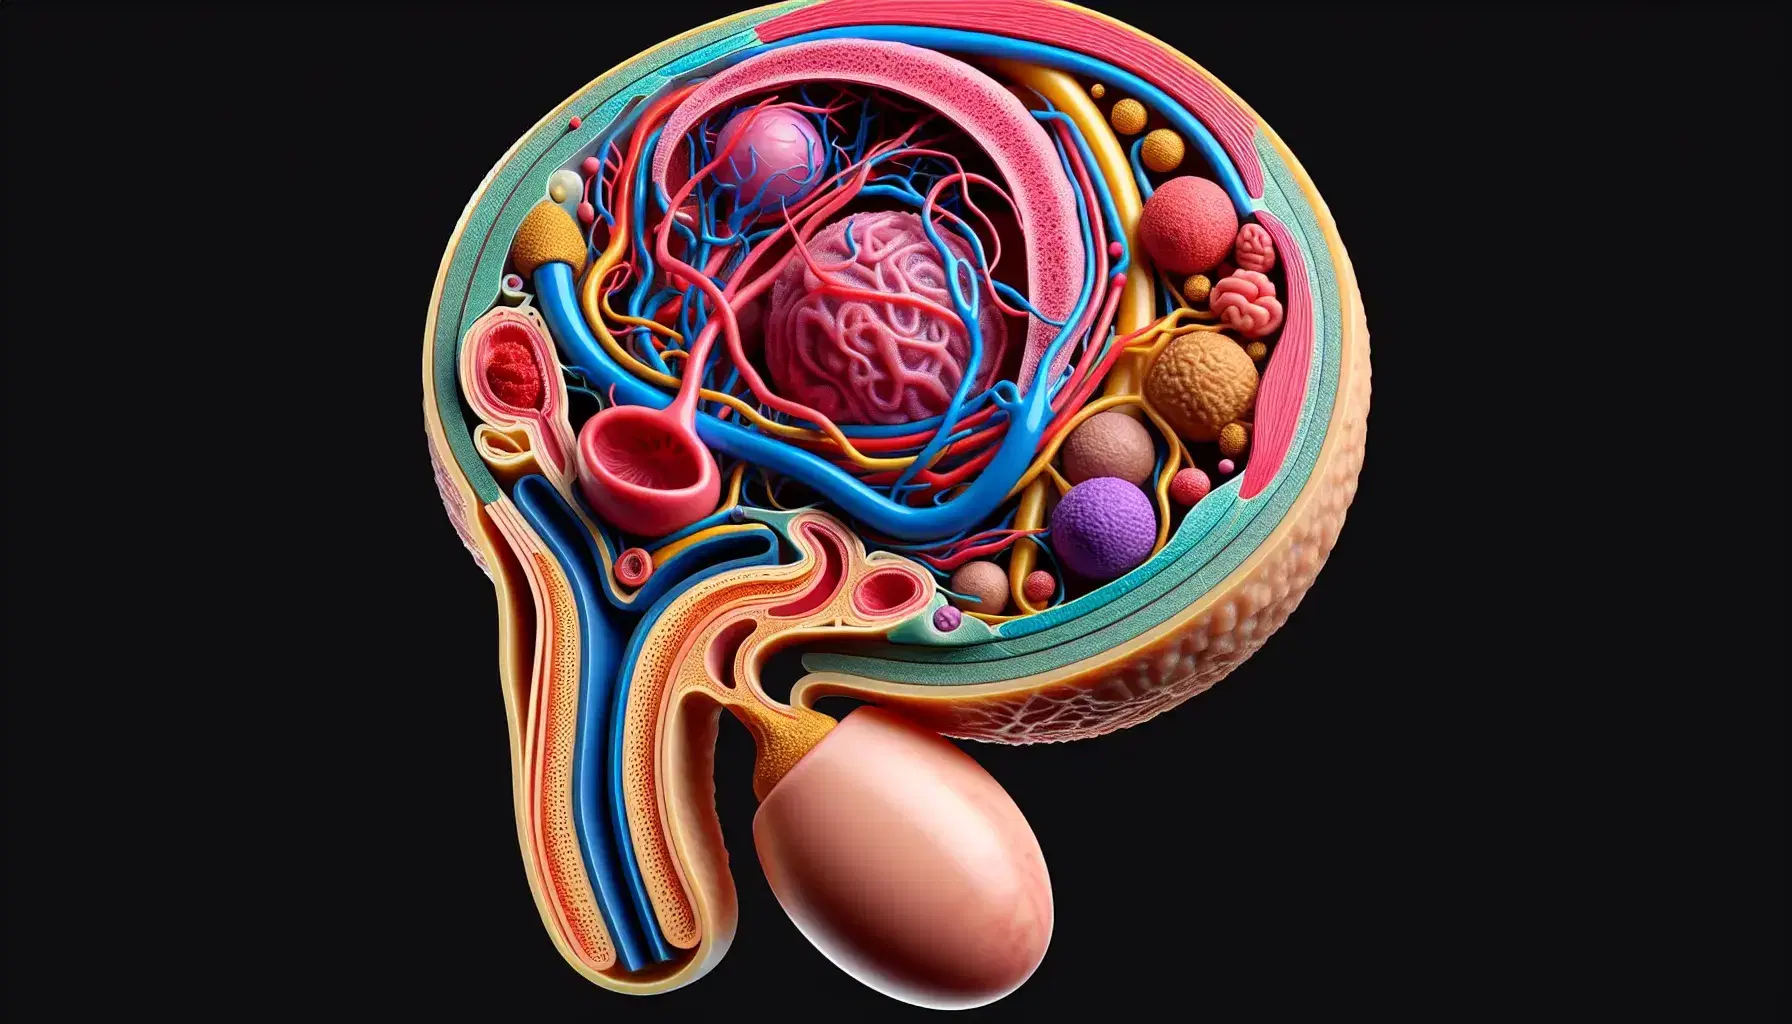 Rappresentazione anatomica del sistema riproduttivo maschile con testicolo, scroto, vas deferens e pene evidenziati in colori distinti.